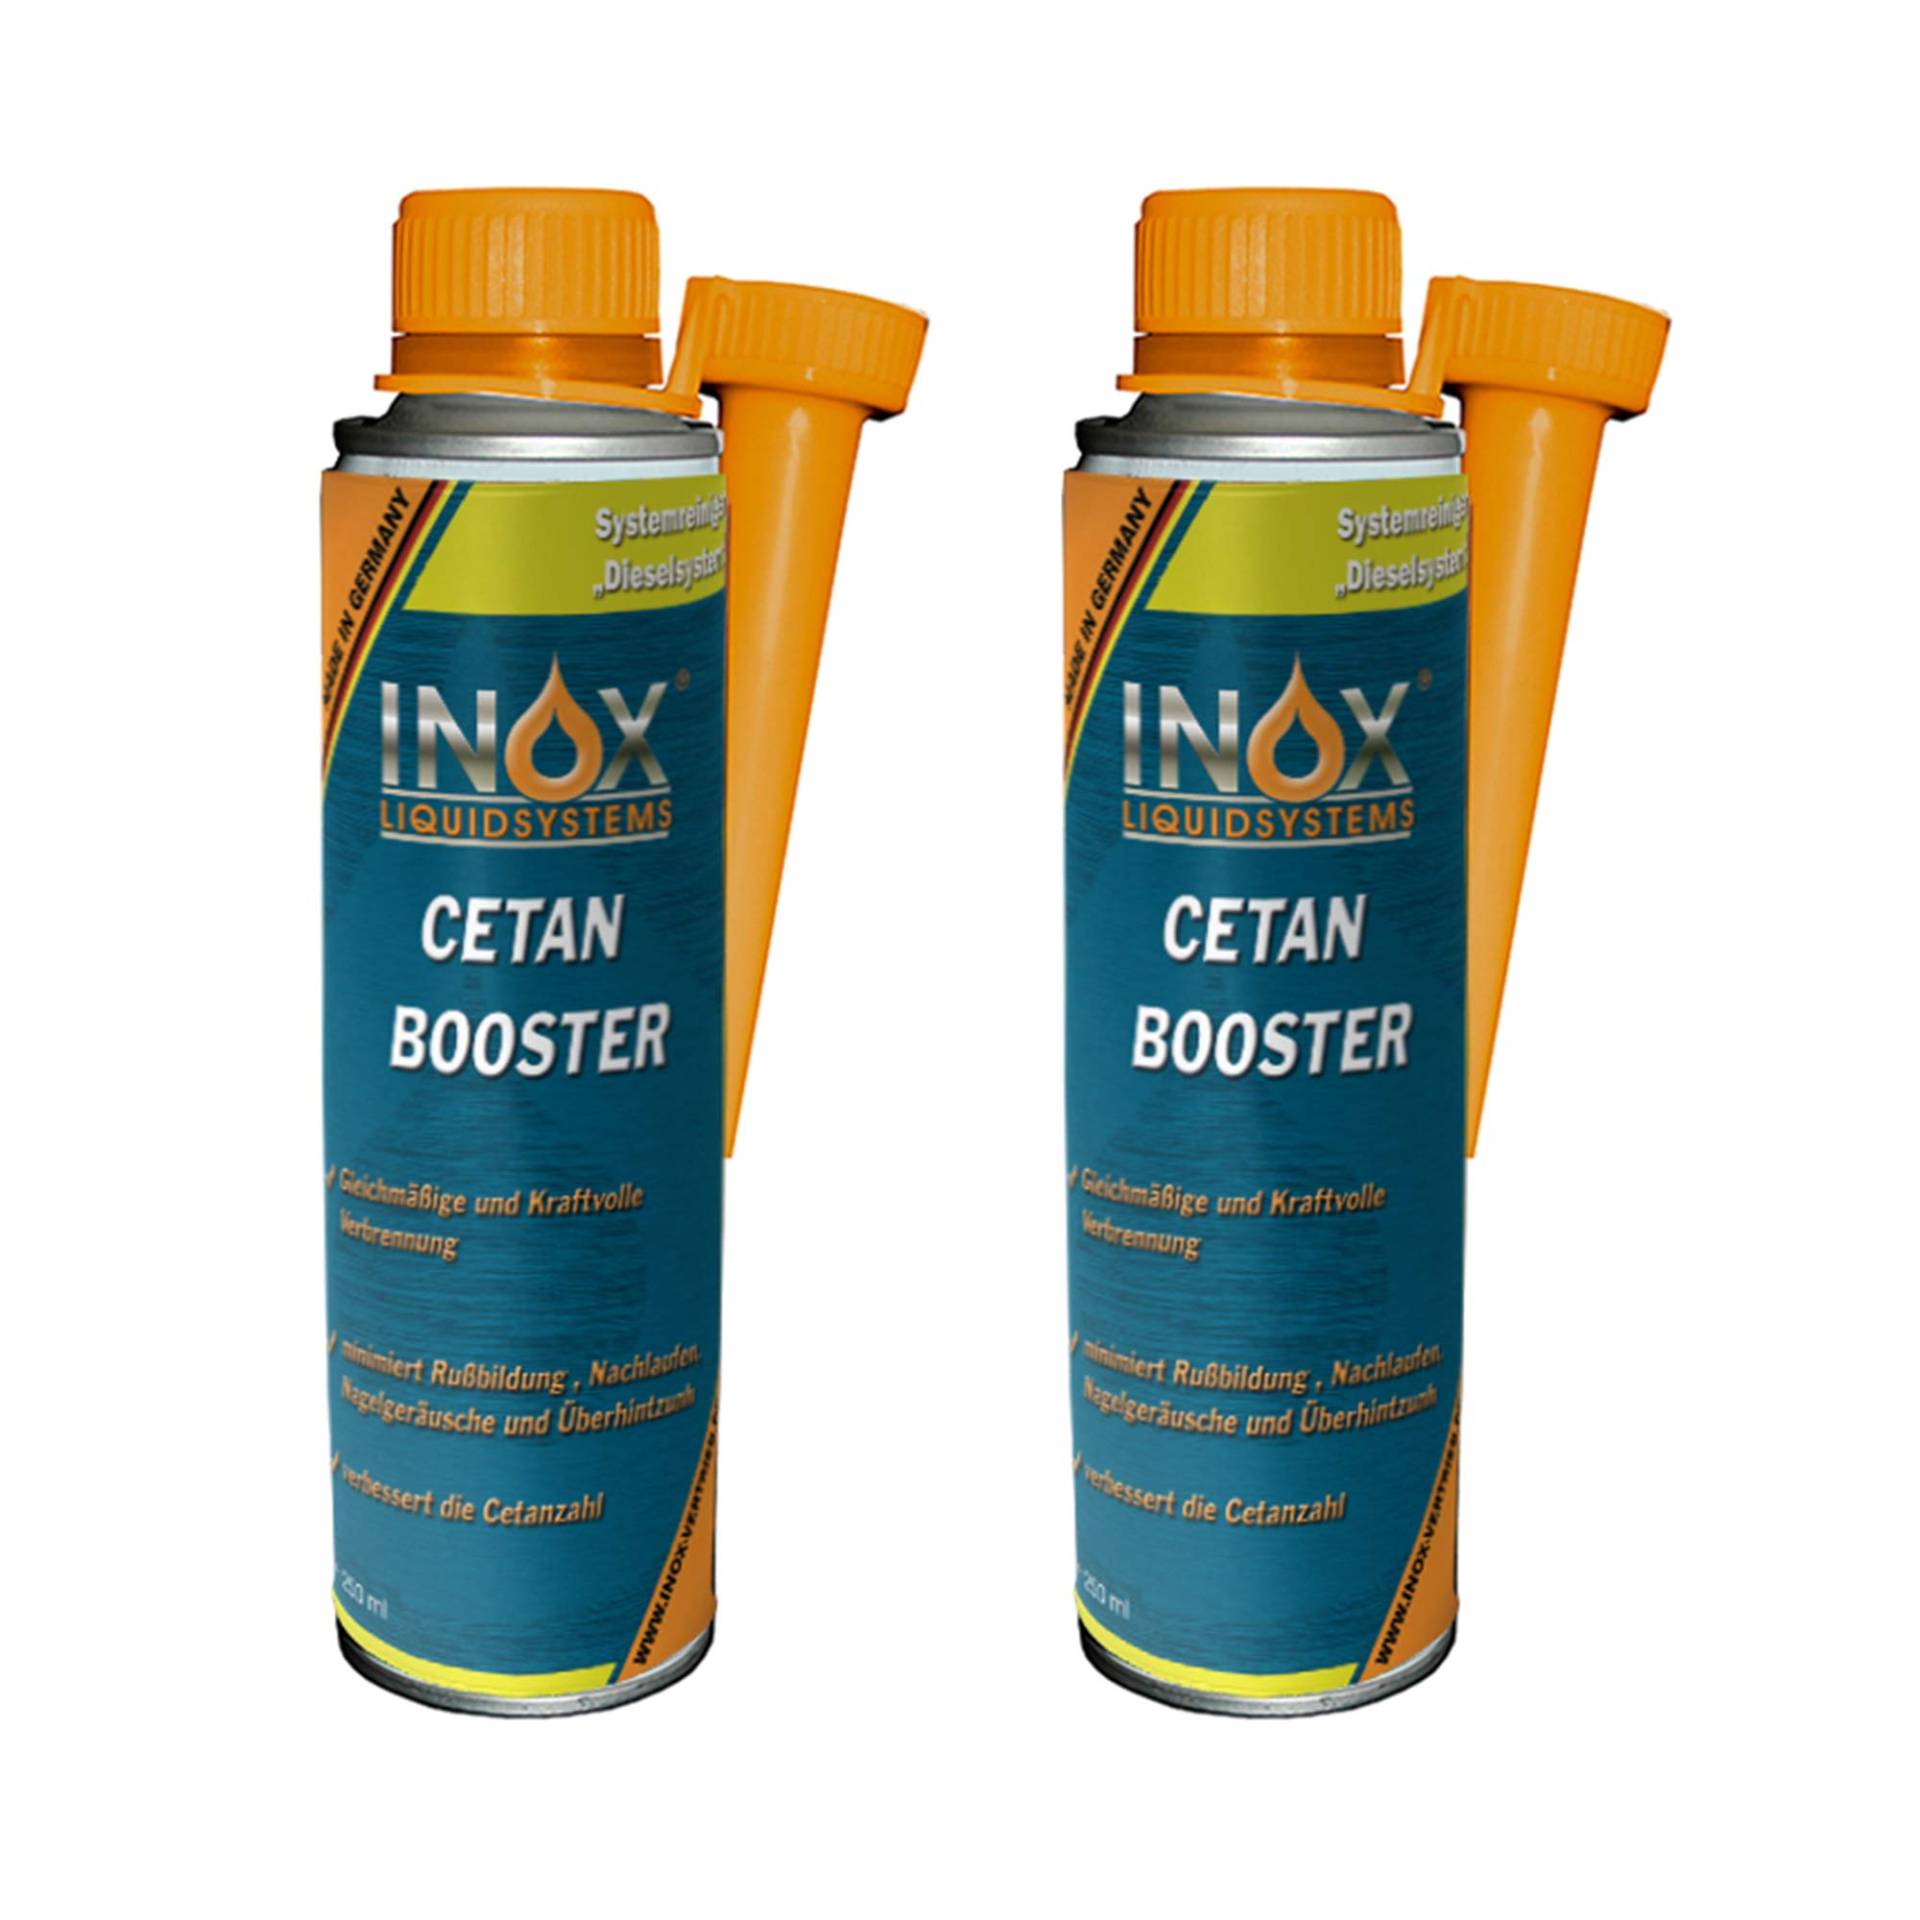 INOX® Cetan Booster Additiv für Dieselmotoren, 2 x 250 ml - Cetanzahlverbesserer Zusatz Dieselmotor von INOX-LIQUIDSYSTEMS